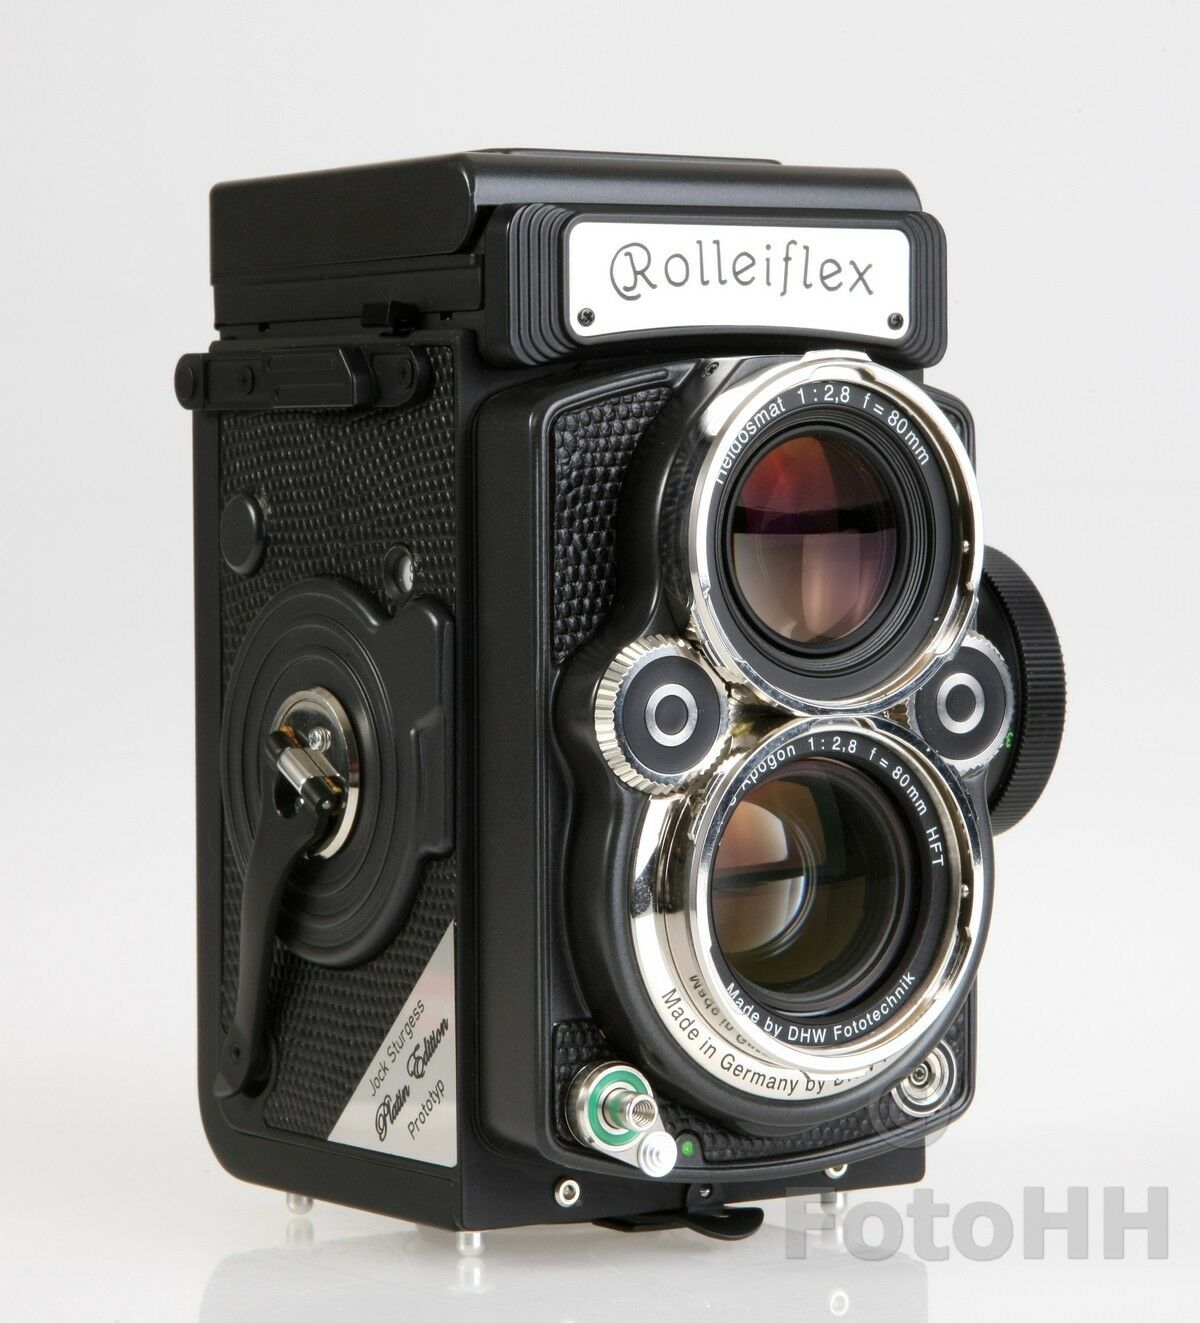 Grab This Rare Set of FOUR Rolleiflex 2.8 FX Platinum Cameras for $39,995